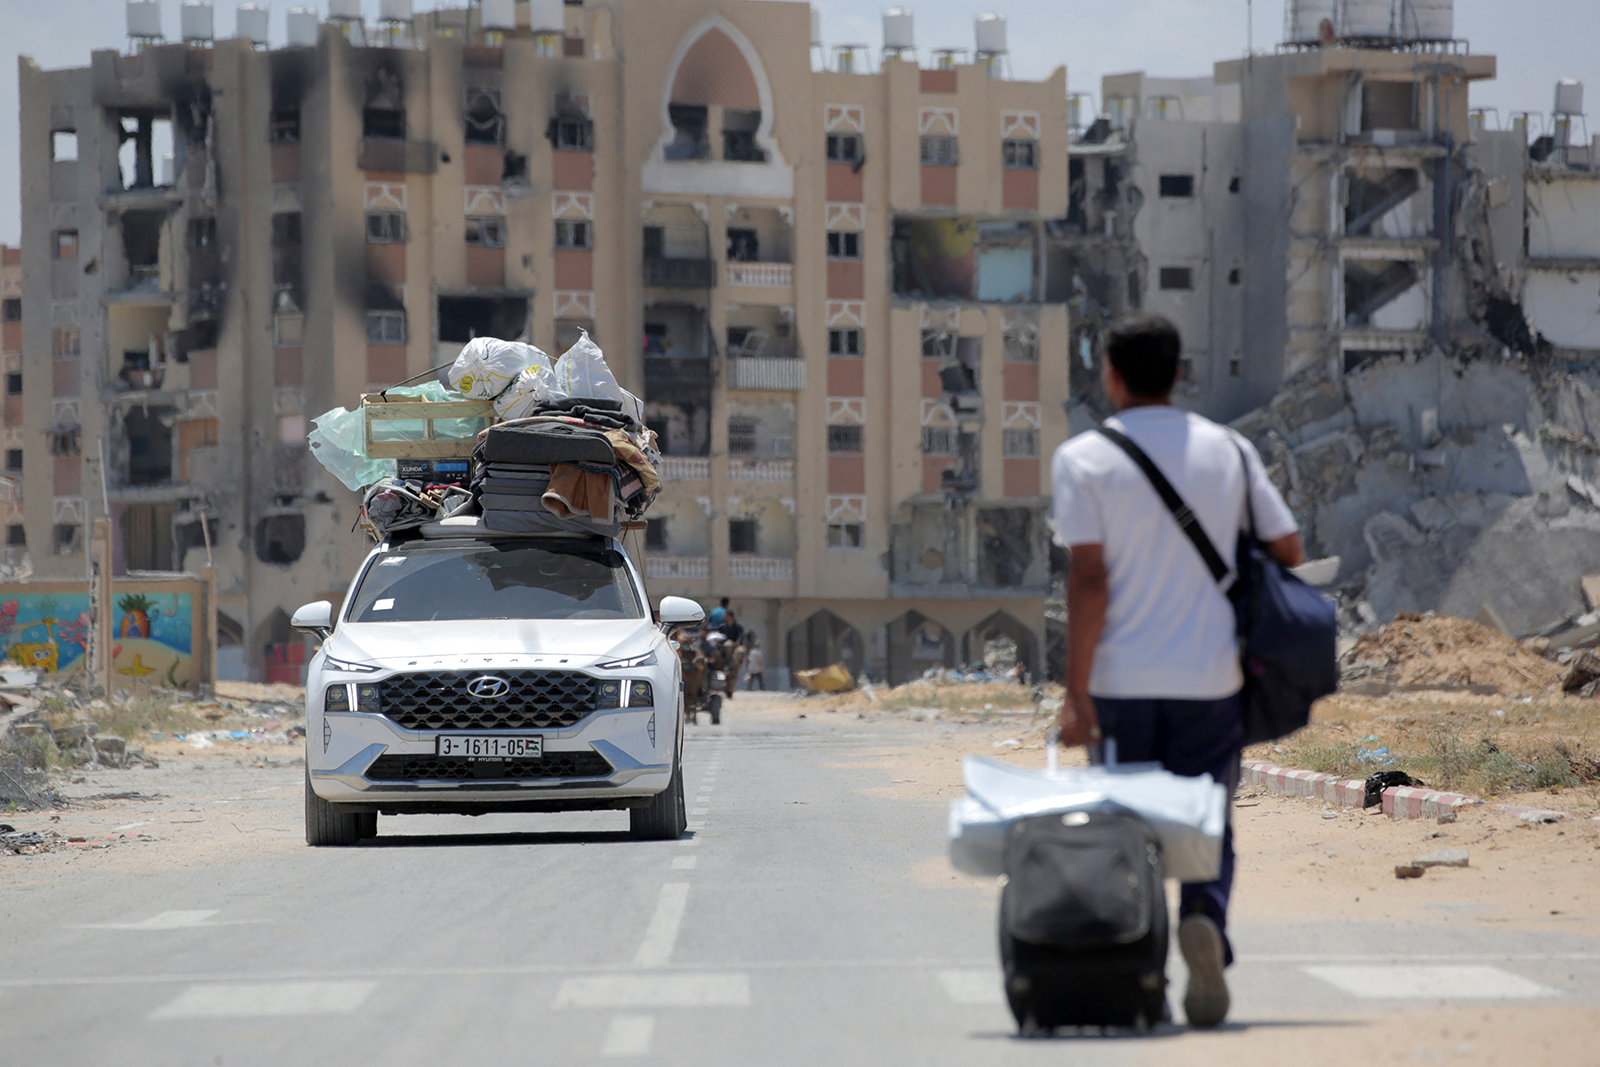 פלסטינים שנמלטו מרפיח בדרום רצועת עזה נושאים את חפציהם מאחורה של משאית כשאדם מושך את מזוודתו עם הגעתם לתפוס מחסה בחאן יונס ב-12 במאי.